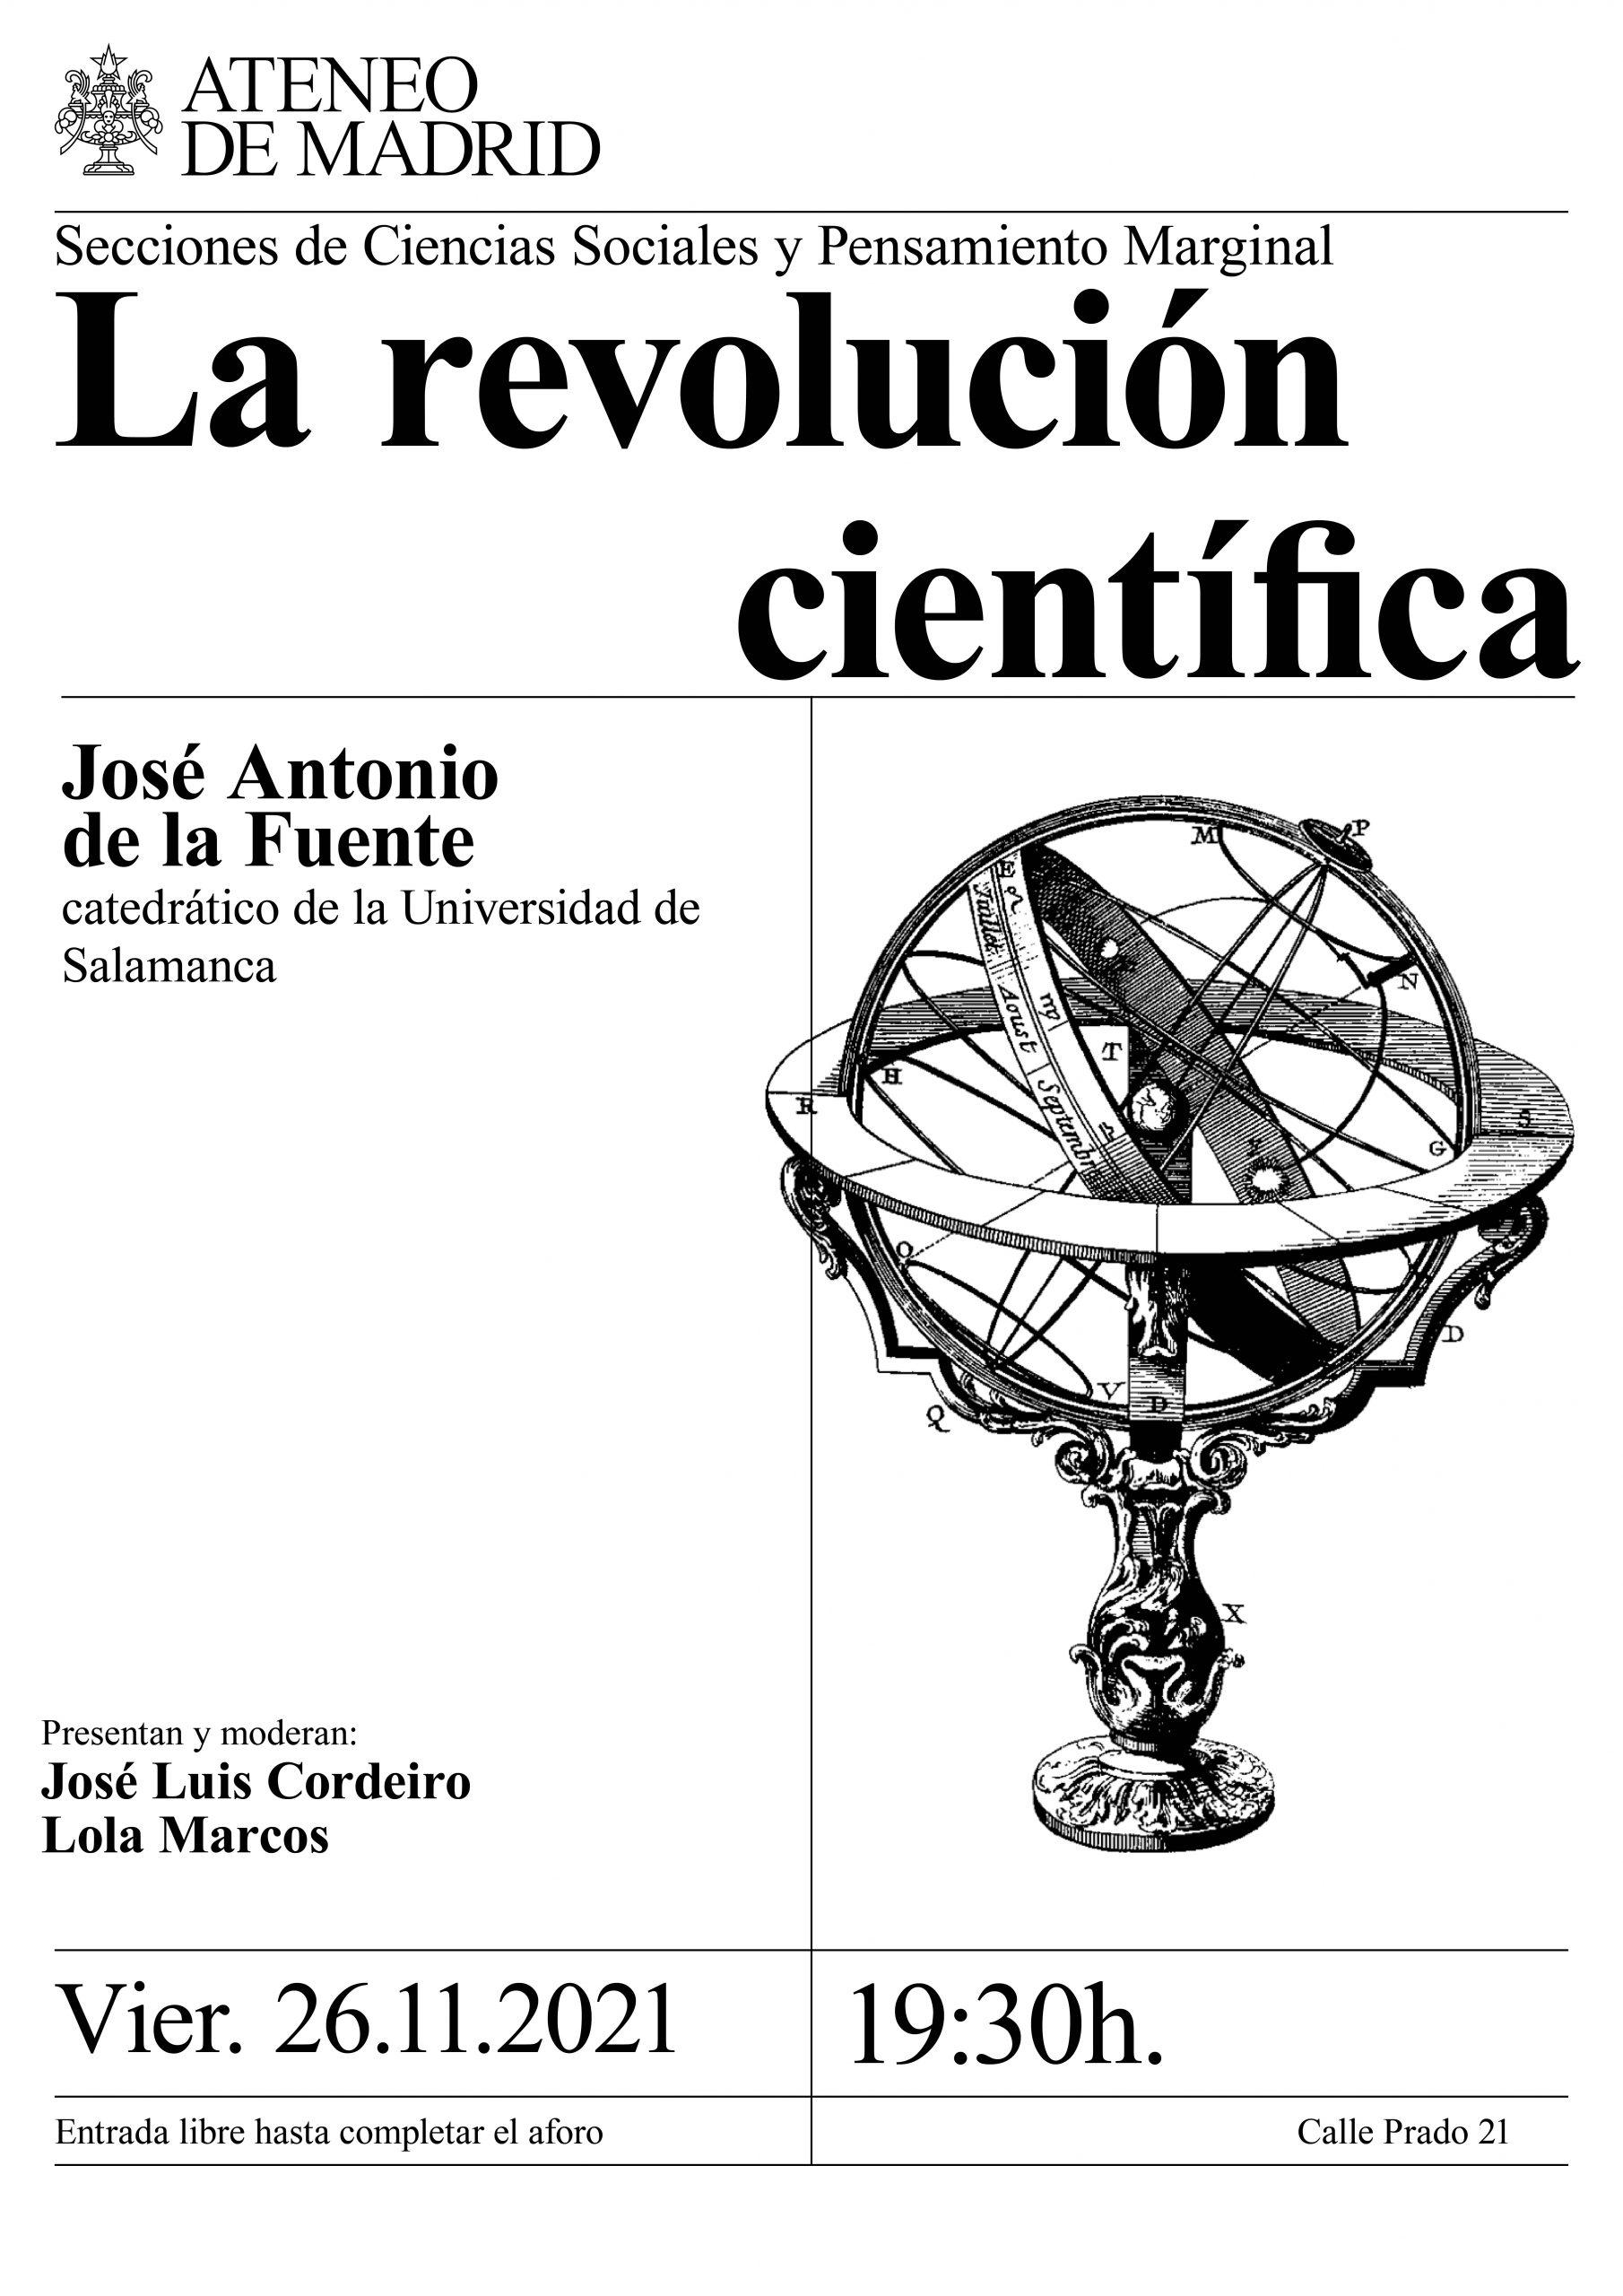 La revolución científica